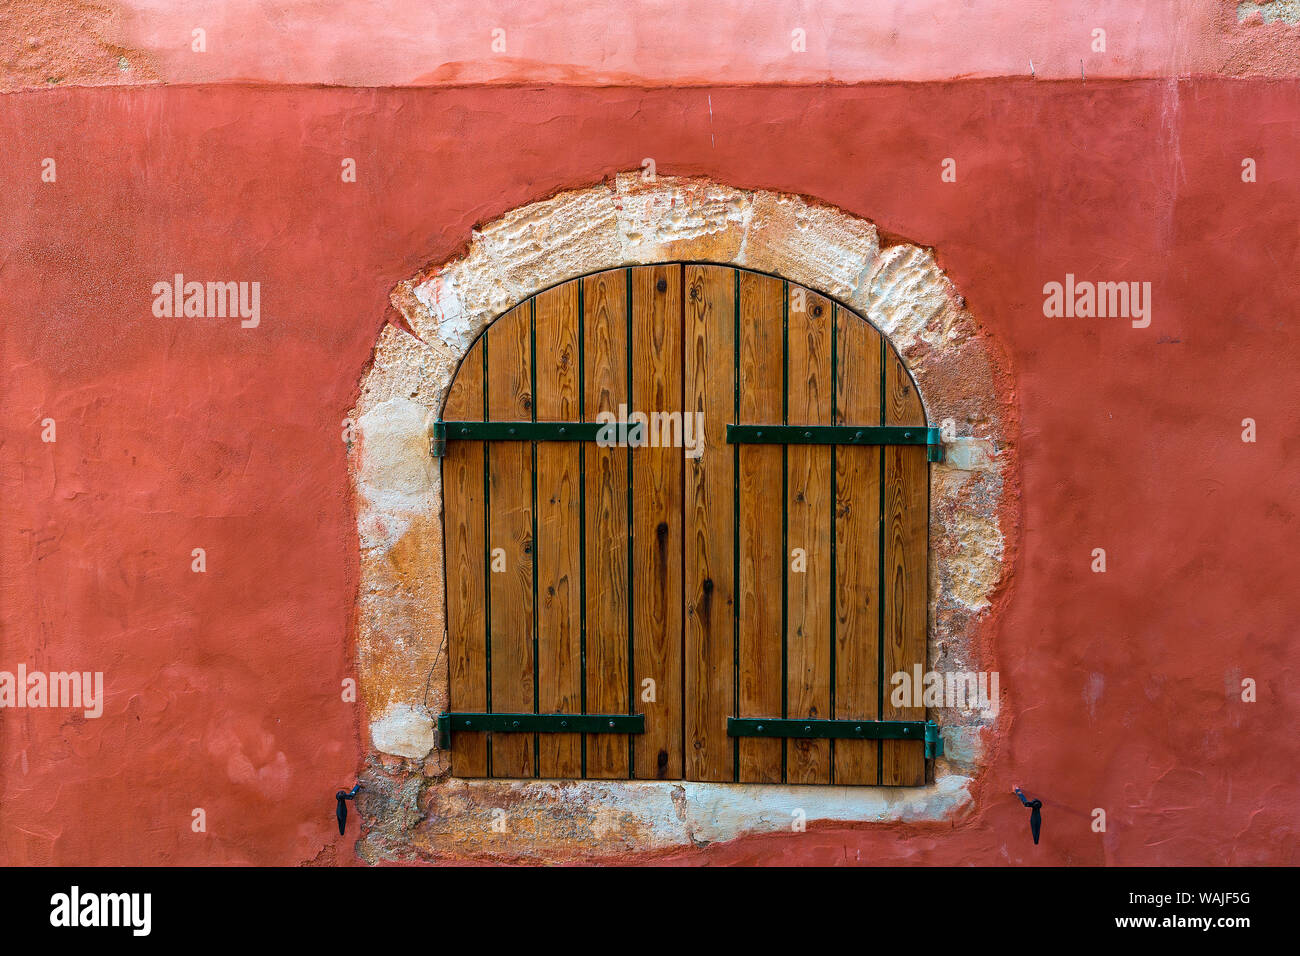 Europa Francia, Provenza, el Rosellón. Persianas de madera en color rojo en la pared. Crédito: Jim Nilsen / Galería / DanitaDelimont.com Jaynes Foto de stock